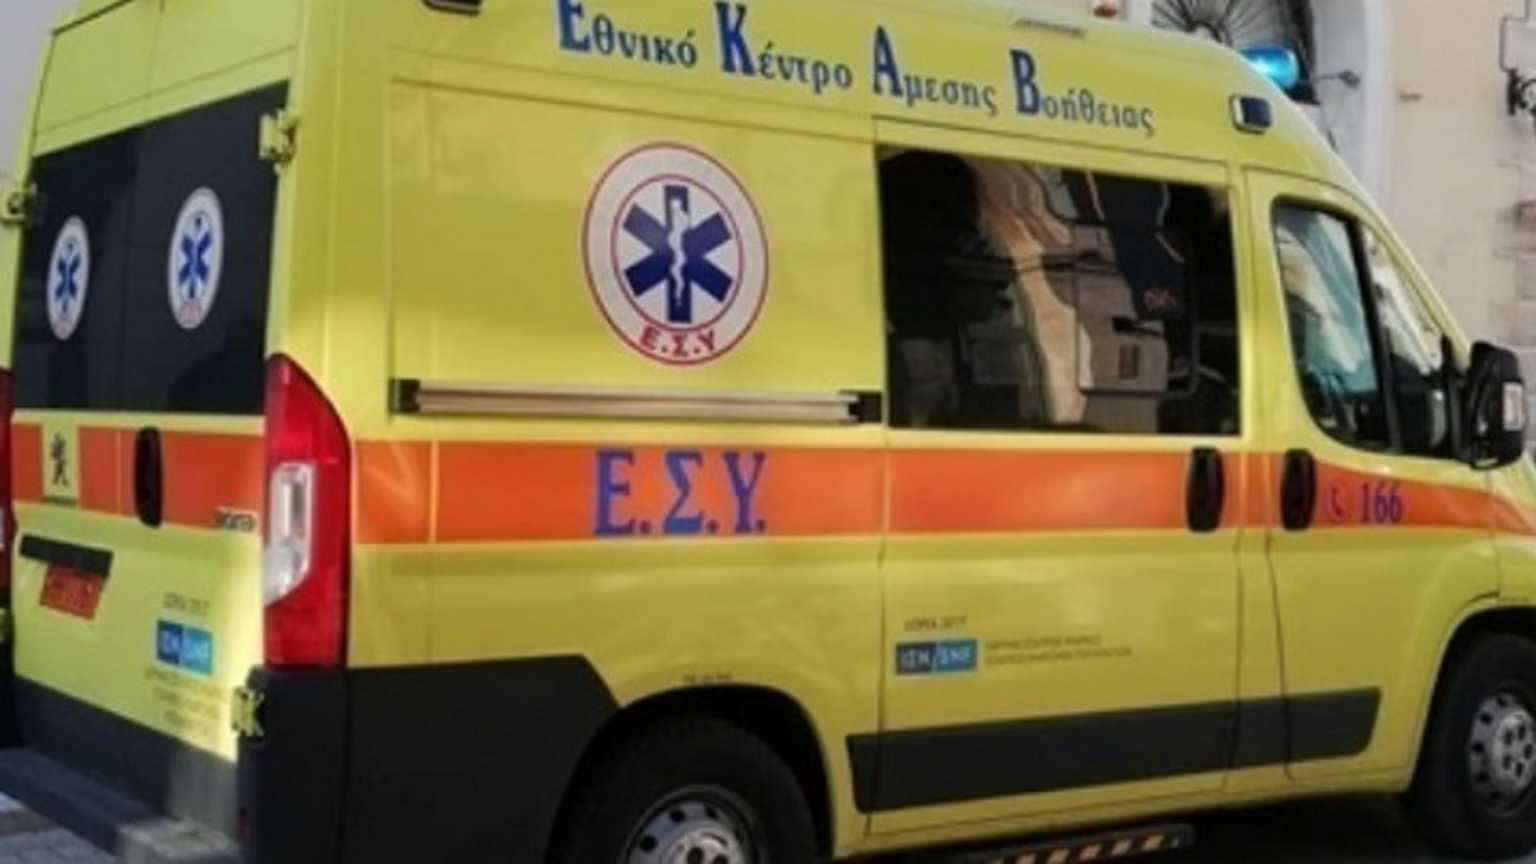 Σοβαρό τροχαίο στον περιφερειακό Θεσσαλονίκης με έναν τραυματία – Εικόνες που σοκάρουν